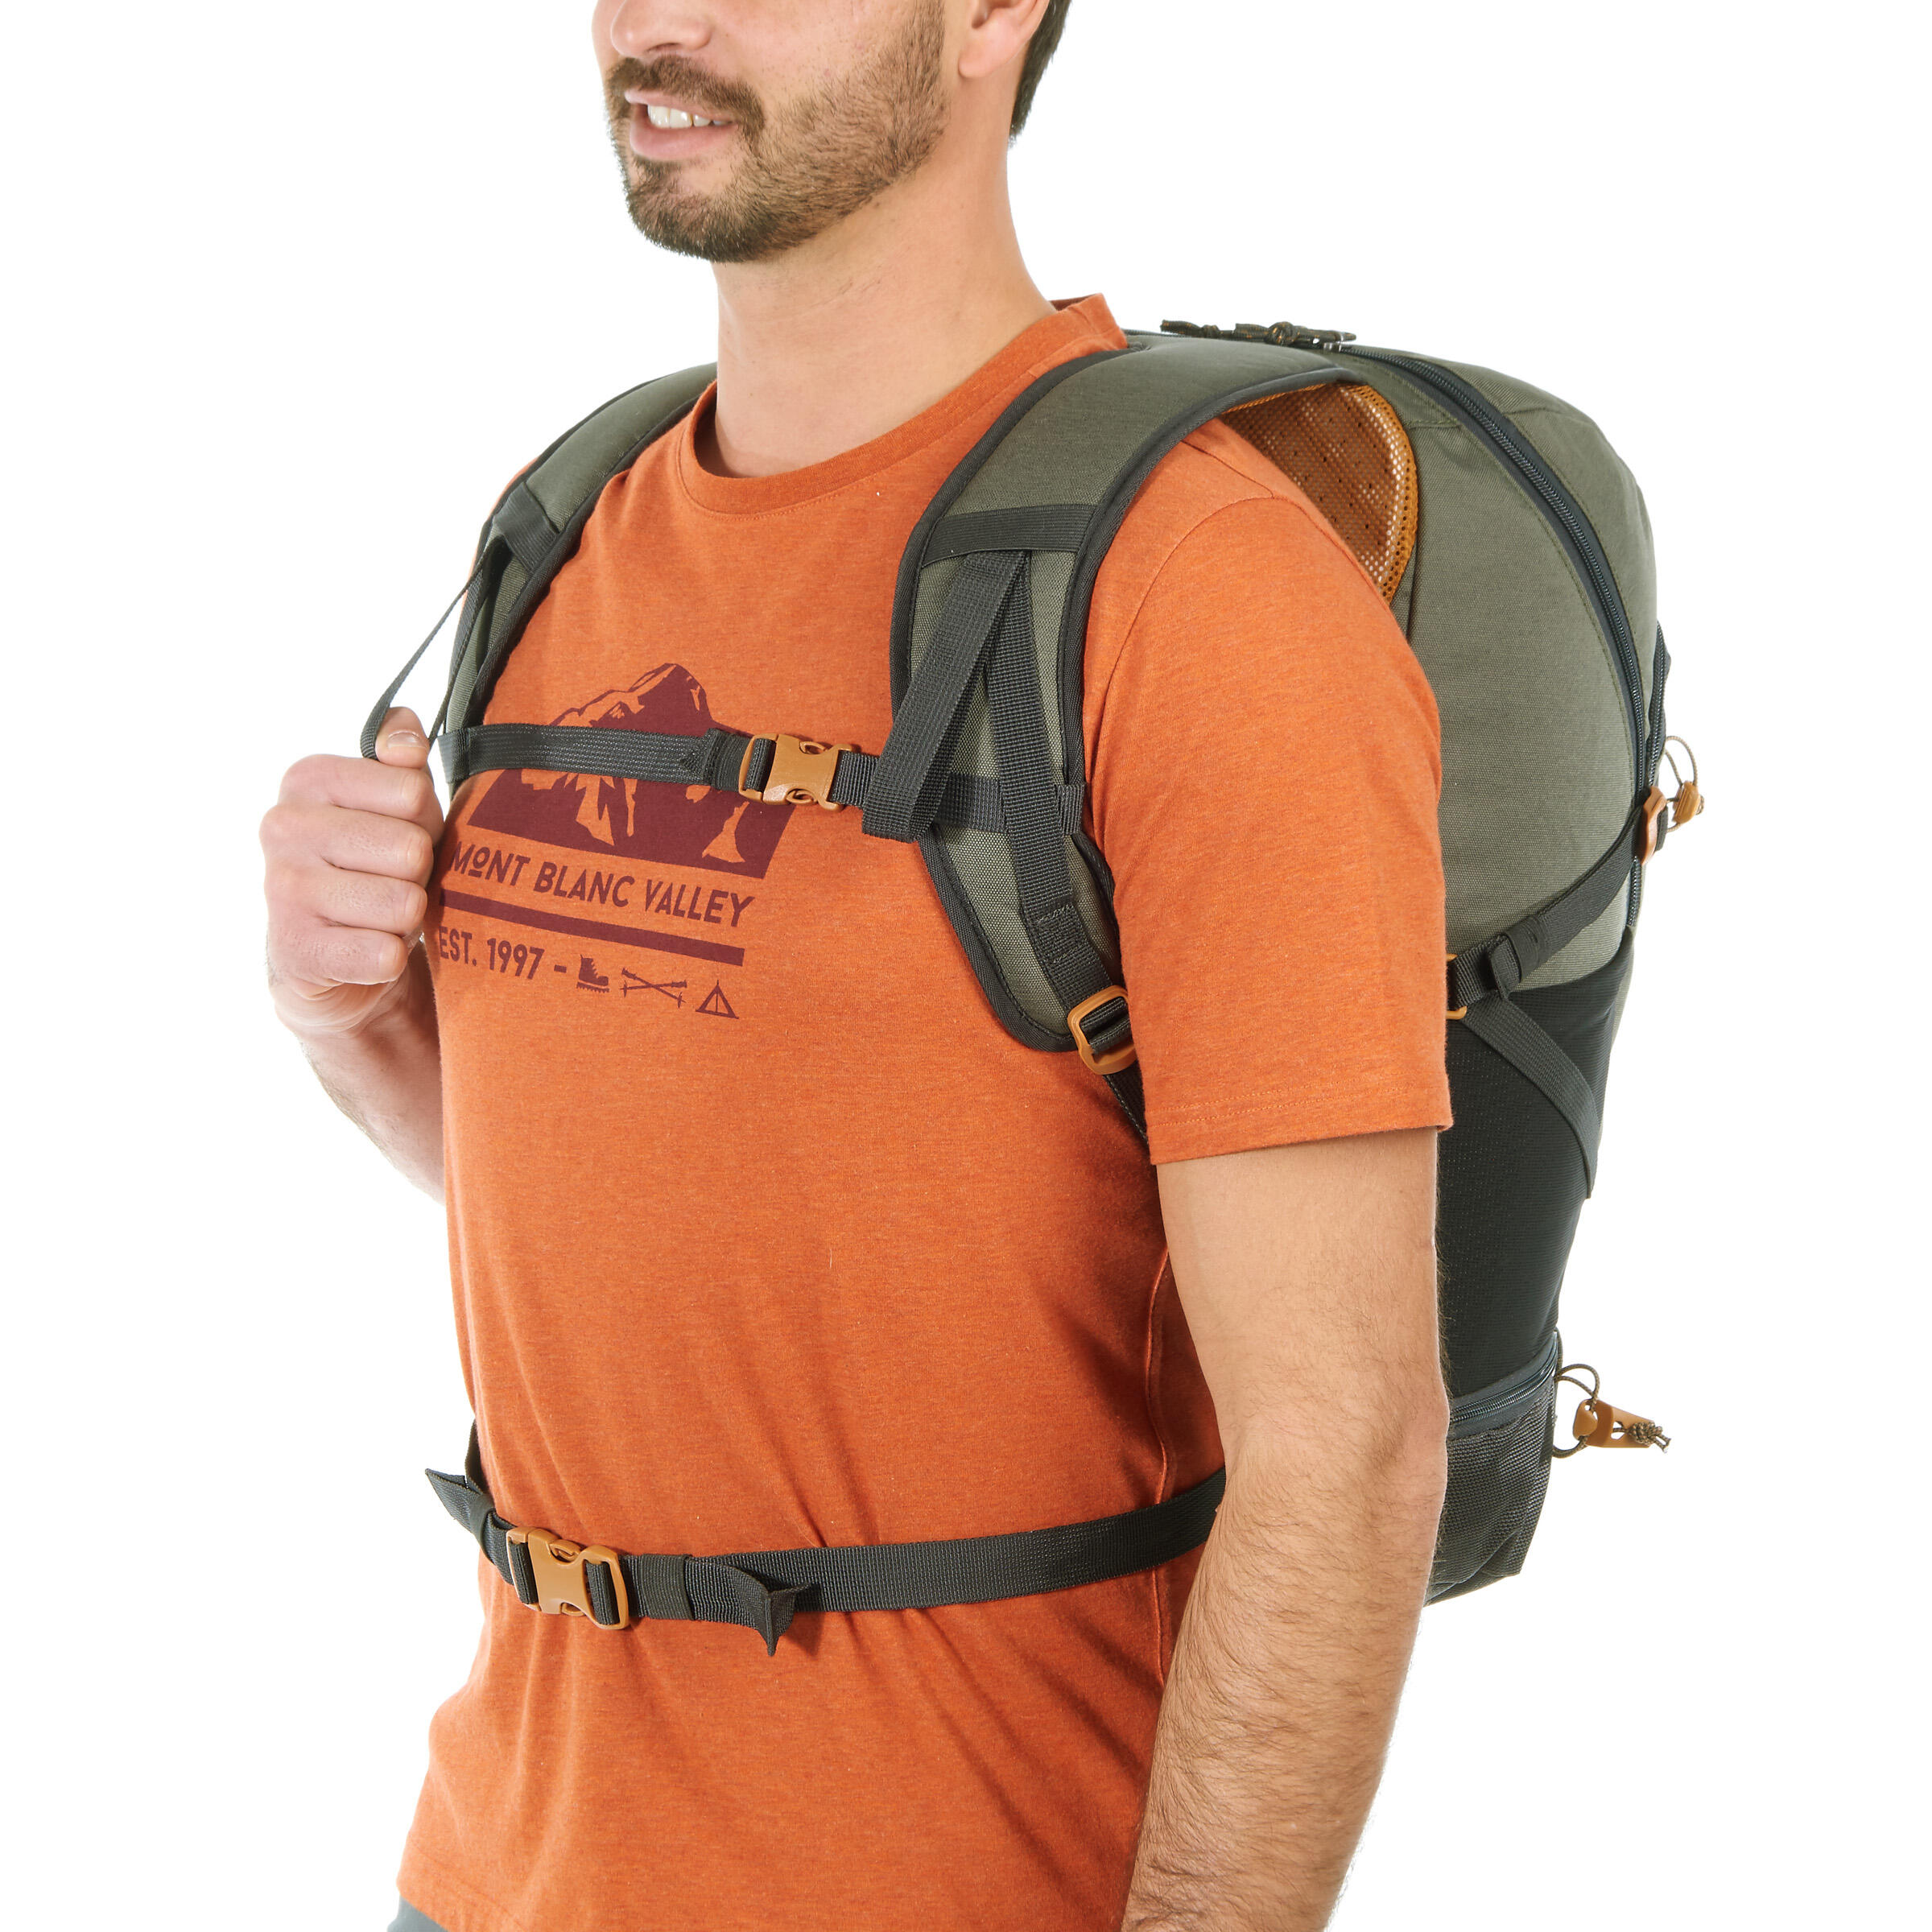 Hiking backpack 30L - NH500 23/23